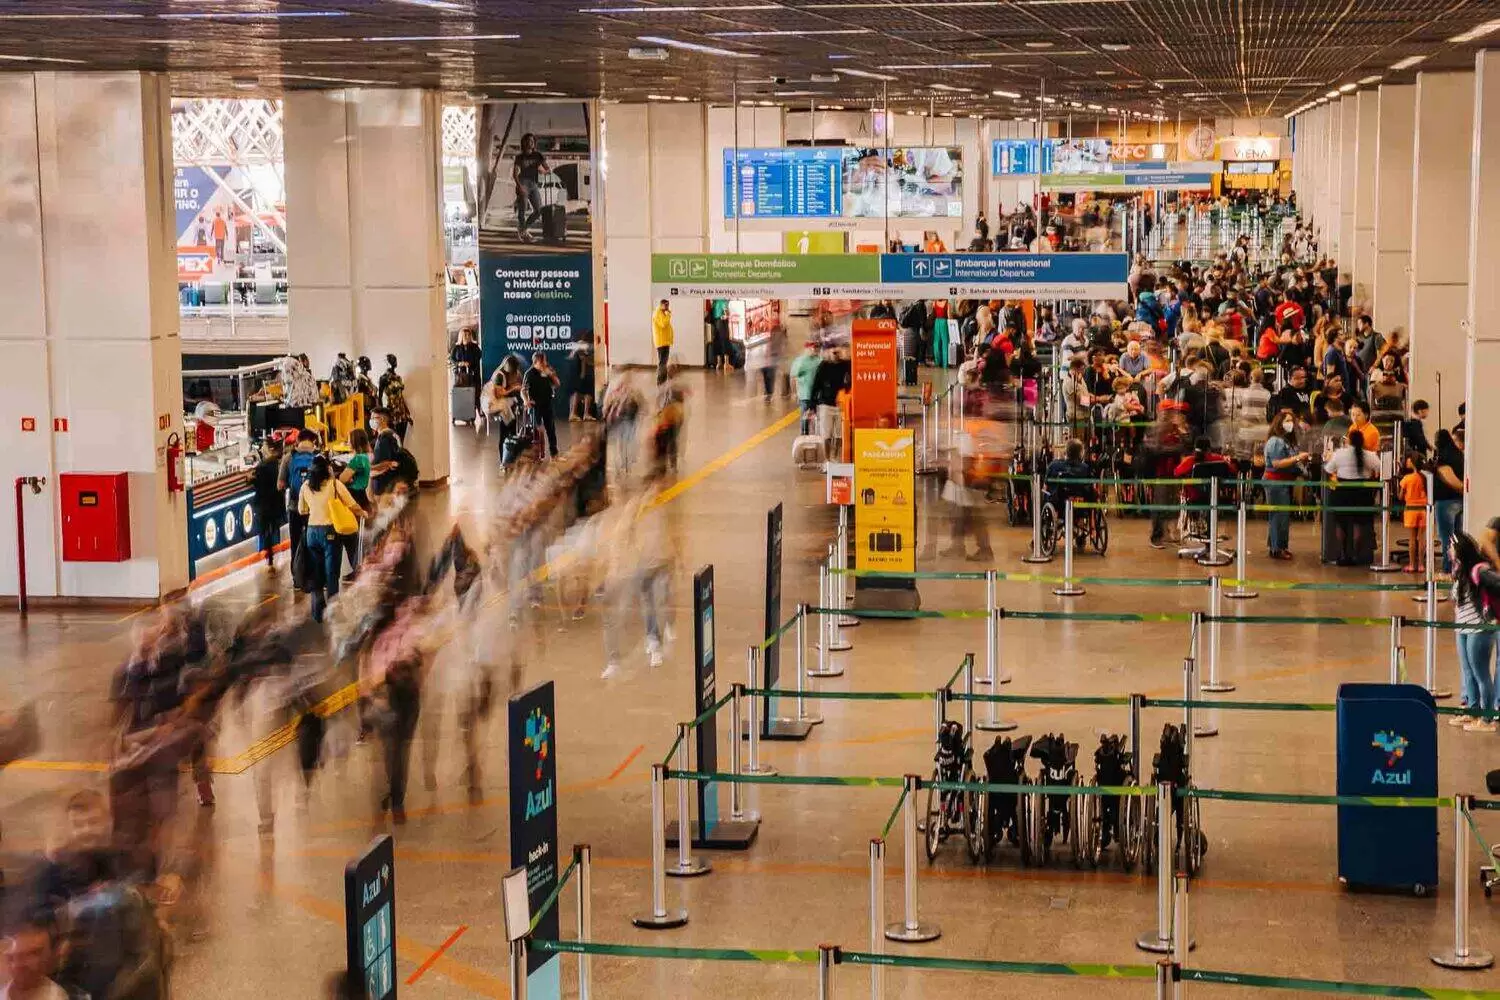 Aeroporto de Brasília: primeiro trimestre com 3,5 milhões de passageiros